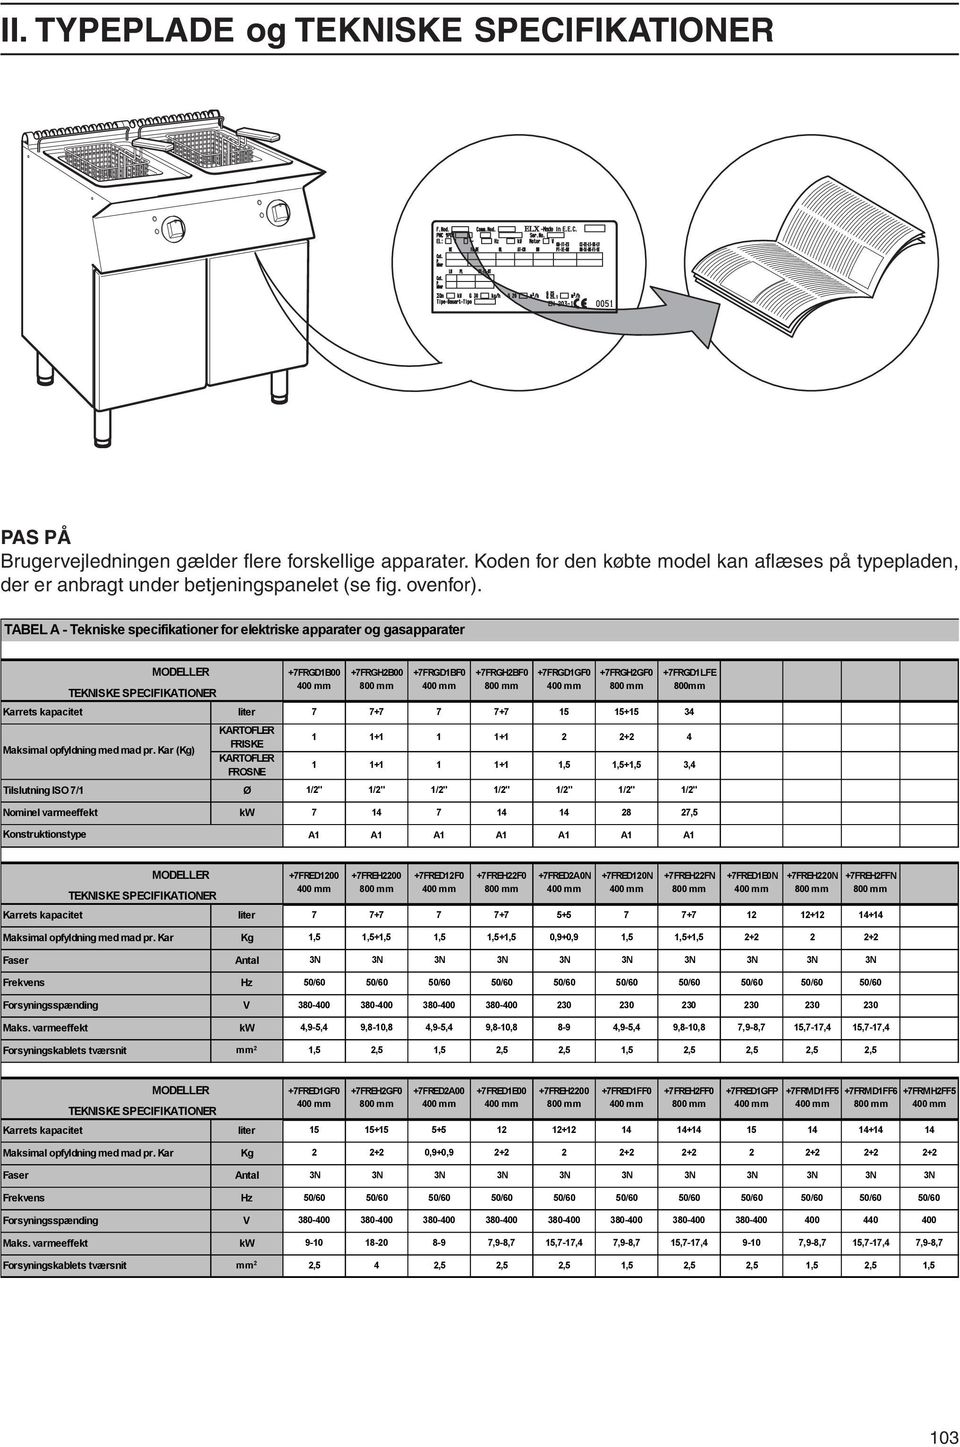 TABEL A - Tekniske specifikationer for elektriske apparater og gasapparater MODELLER TEKNISKE SPECIFIKATIONER +7FRGD1B00 400 mm +7FRGH2B00 800 mm +7FRGD1BF0 400 mm +7FRGH2BF0 800 mm +7FRGD1GF0 400 mm